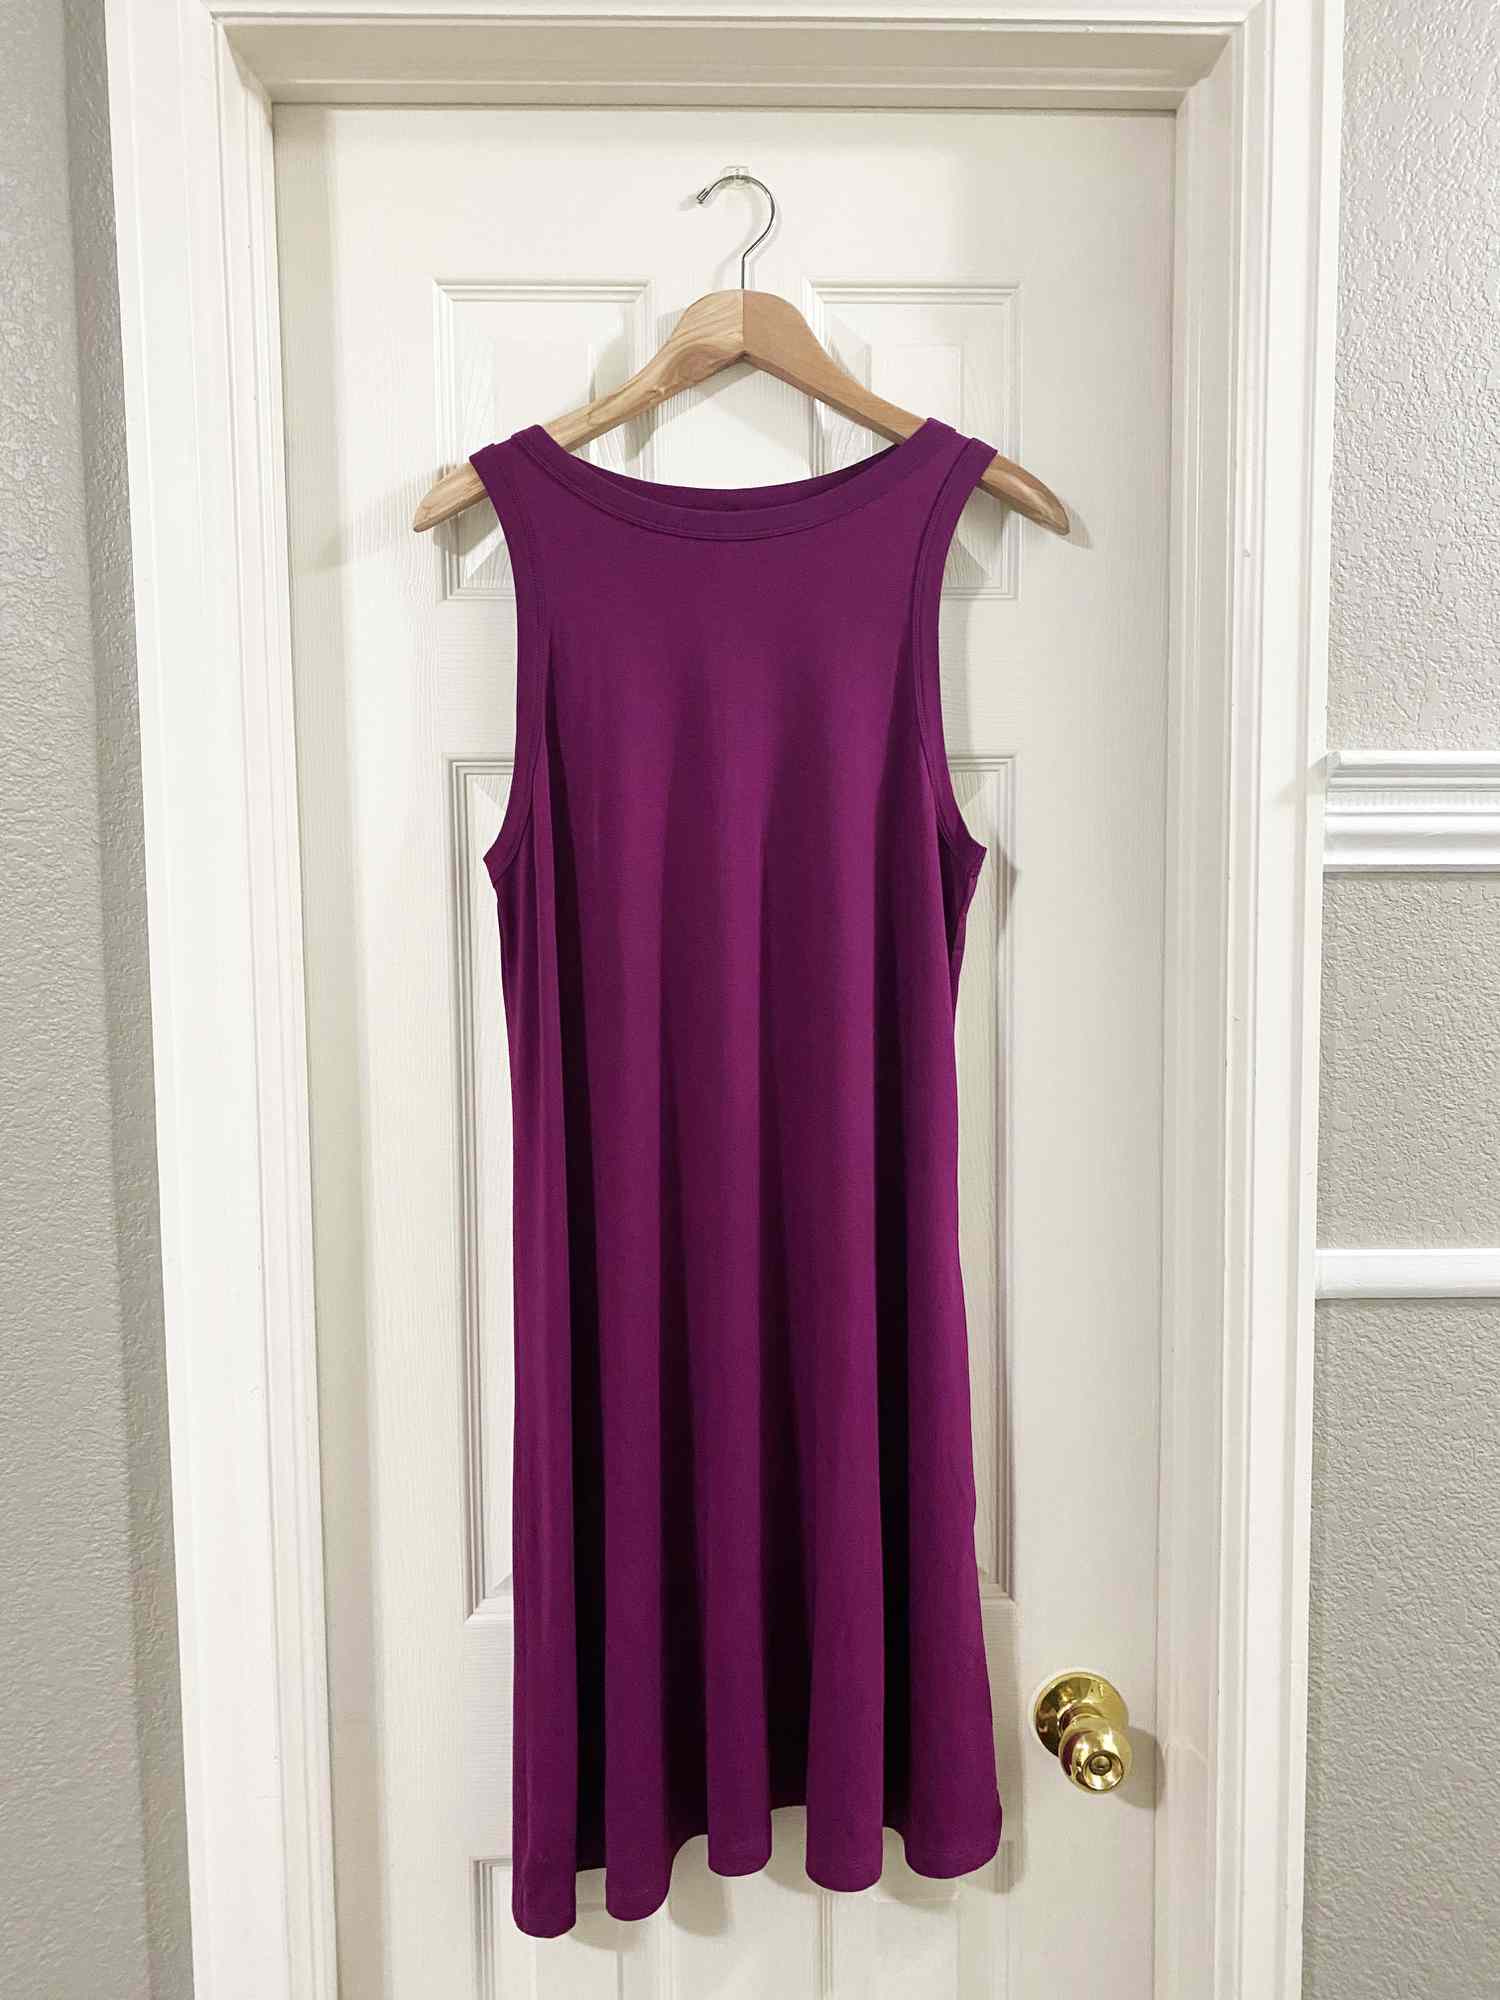 一个紫色的衣服挂在门上